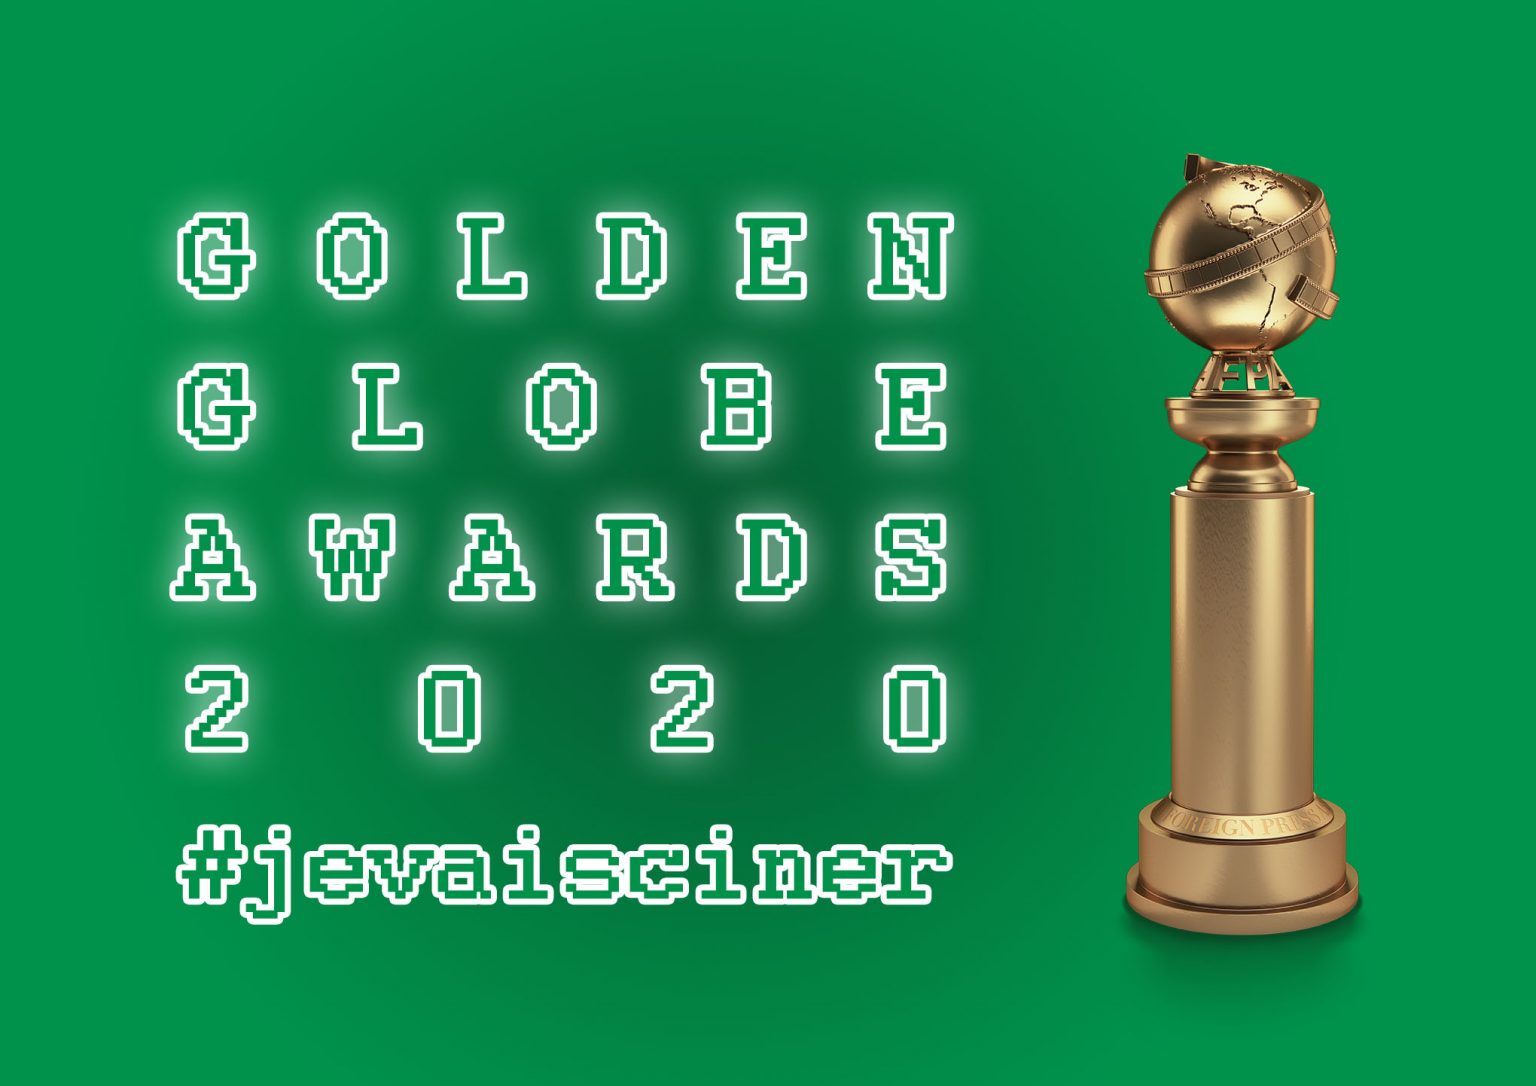 Golden Globes 2020 Poster.jpg